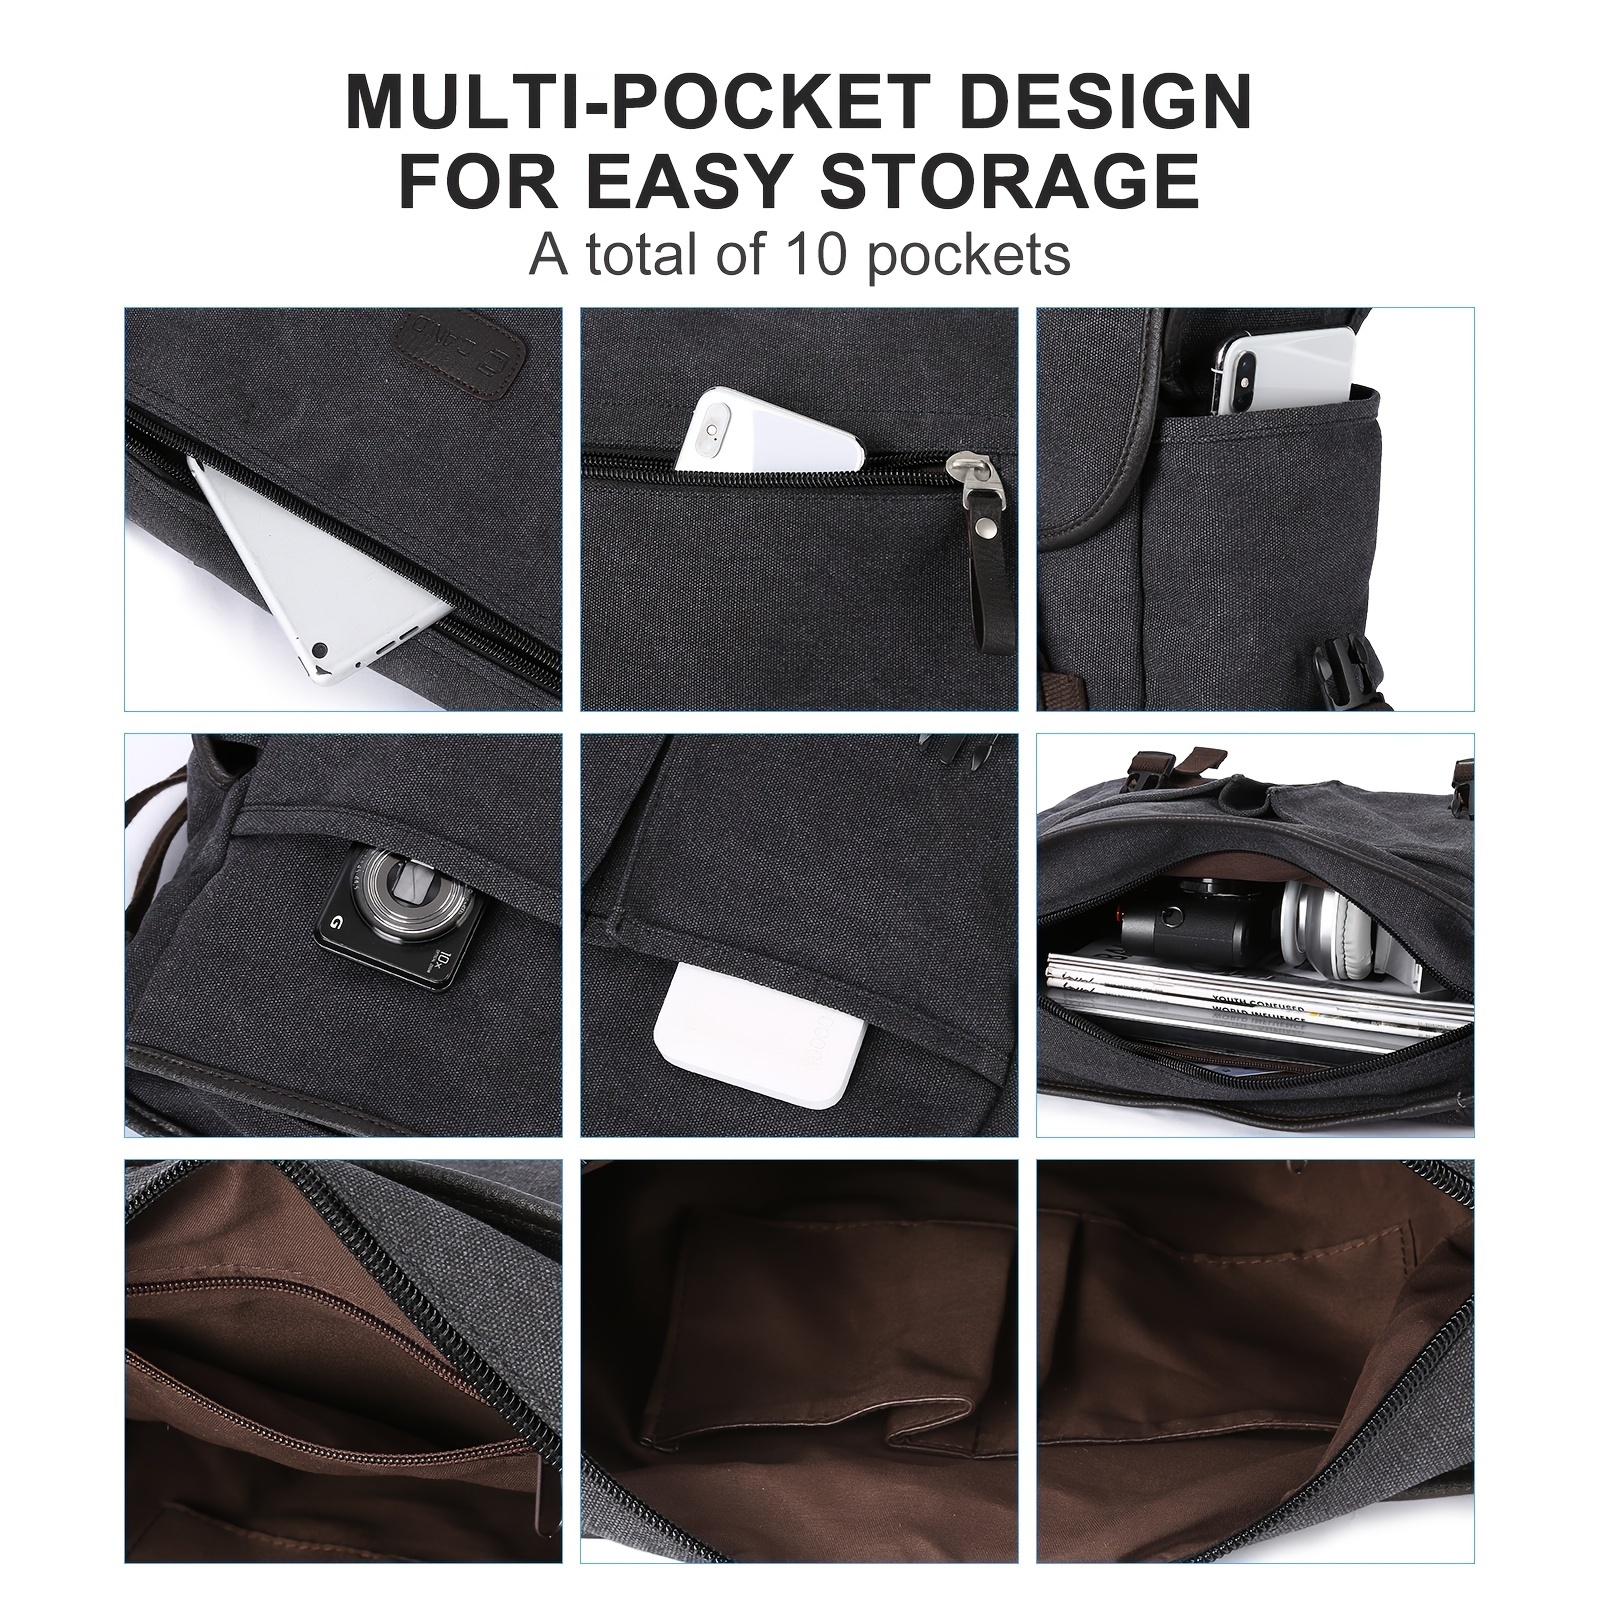 Messenger Bag for Men,Water Resistant Unisex Canvas Shoulder Bag,Vintage  Military Crossbody Bag,14 inch laptop bag